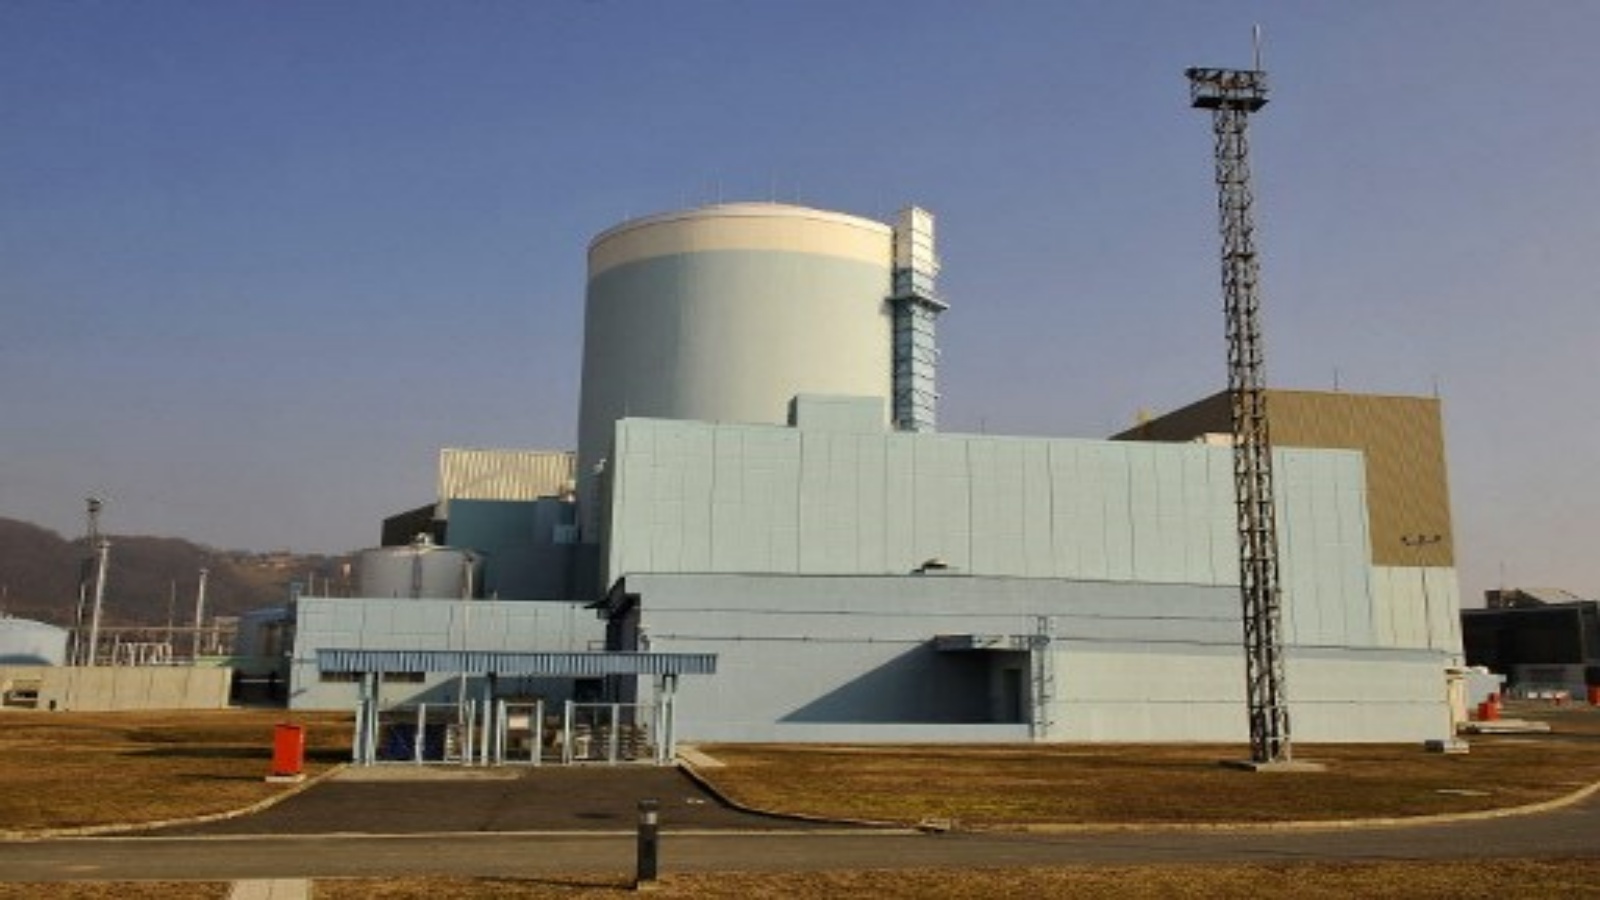 هذه الصورة التي التقطت في 20 فبراير / شباط 2008 ، تُظهر محطة سلوفينيا للطاقة النووية الوحيدة في كرسكو ، على بعد حوالي 10 كيلومترات من الحدود مع كرواتيا. قالت المتحدثة باسم المحطة في 29 ديسمبر 2020 ، إن محطة كرسكو للطاقة النو